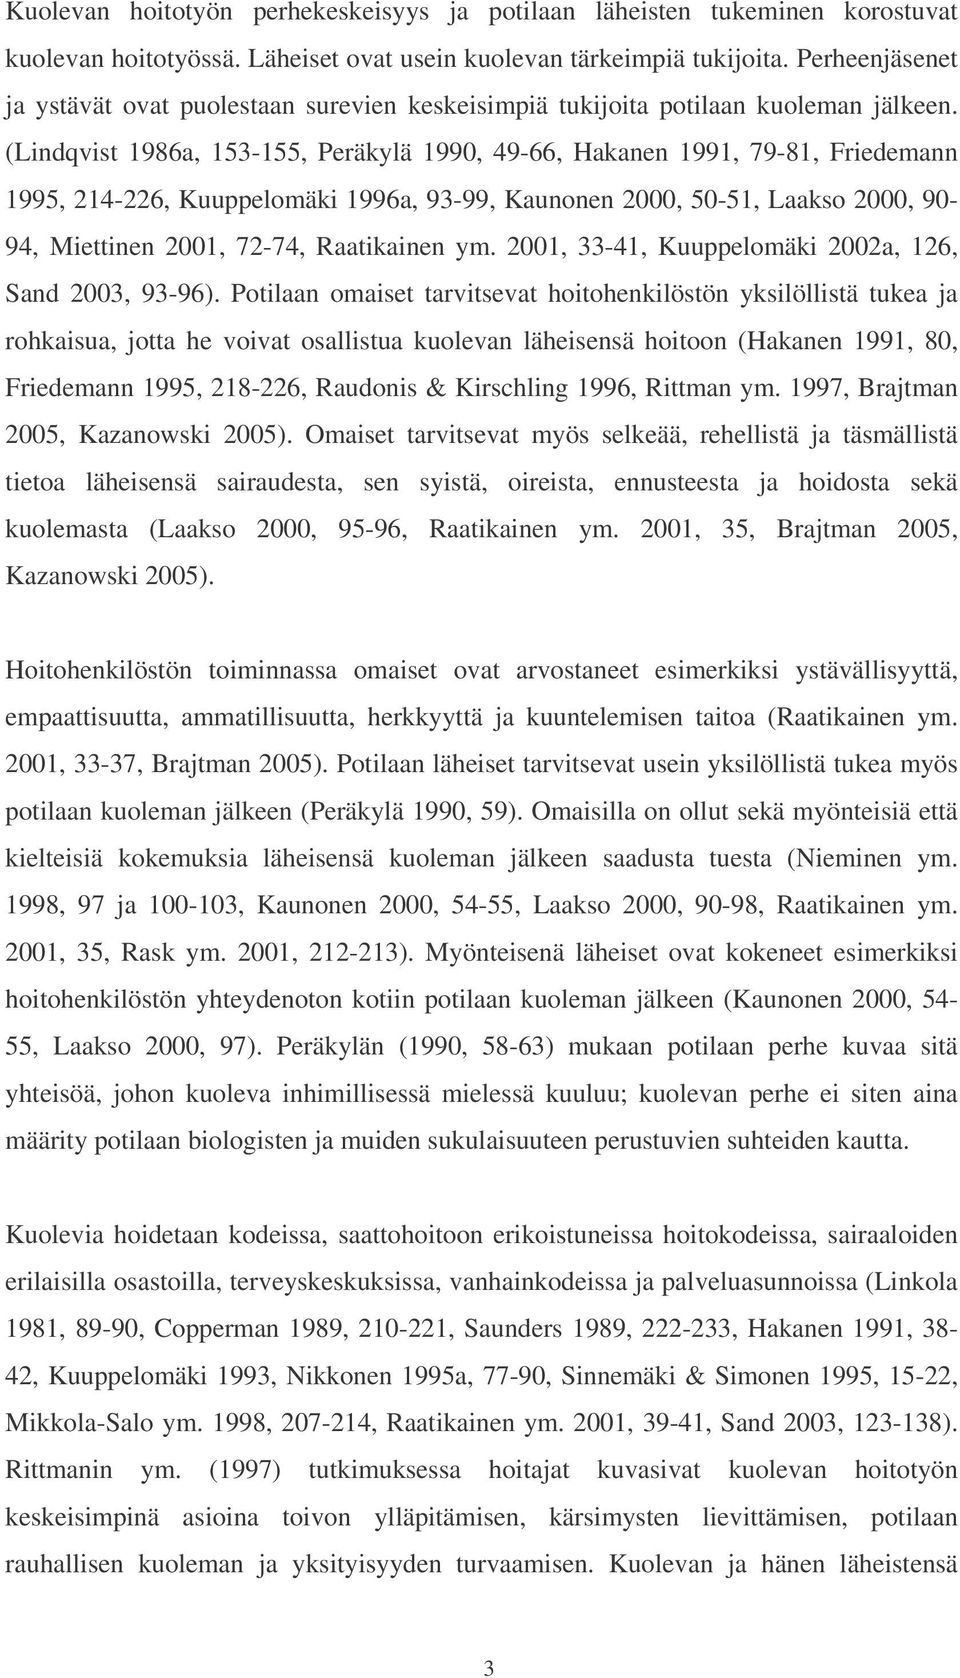 (Lindqvist 1986a, 153-155, Peräkylä 1990, 49-66, Hakanen 1991, 79-81, Friedemann 1995, 214-226, Kuuppelomäki 1996a, 93-99, Kaunonen 2000, 50-51, Laakso 2000, 90-94, Miettinen 2001, 72-74, Raatikainen